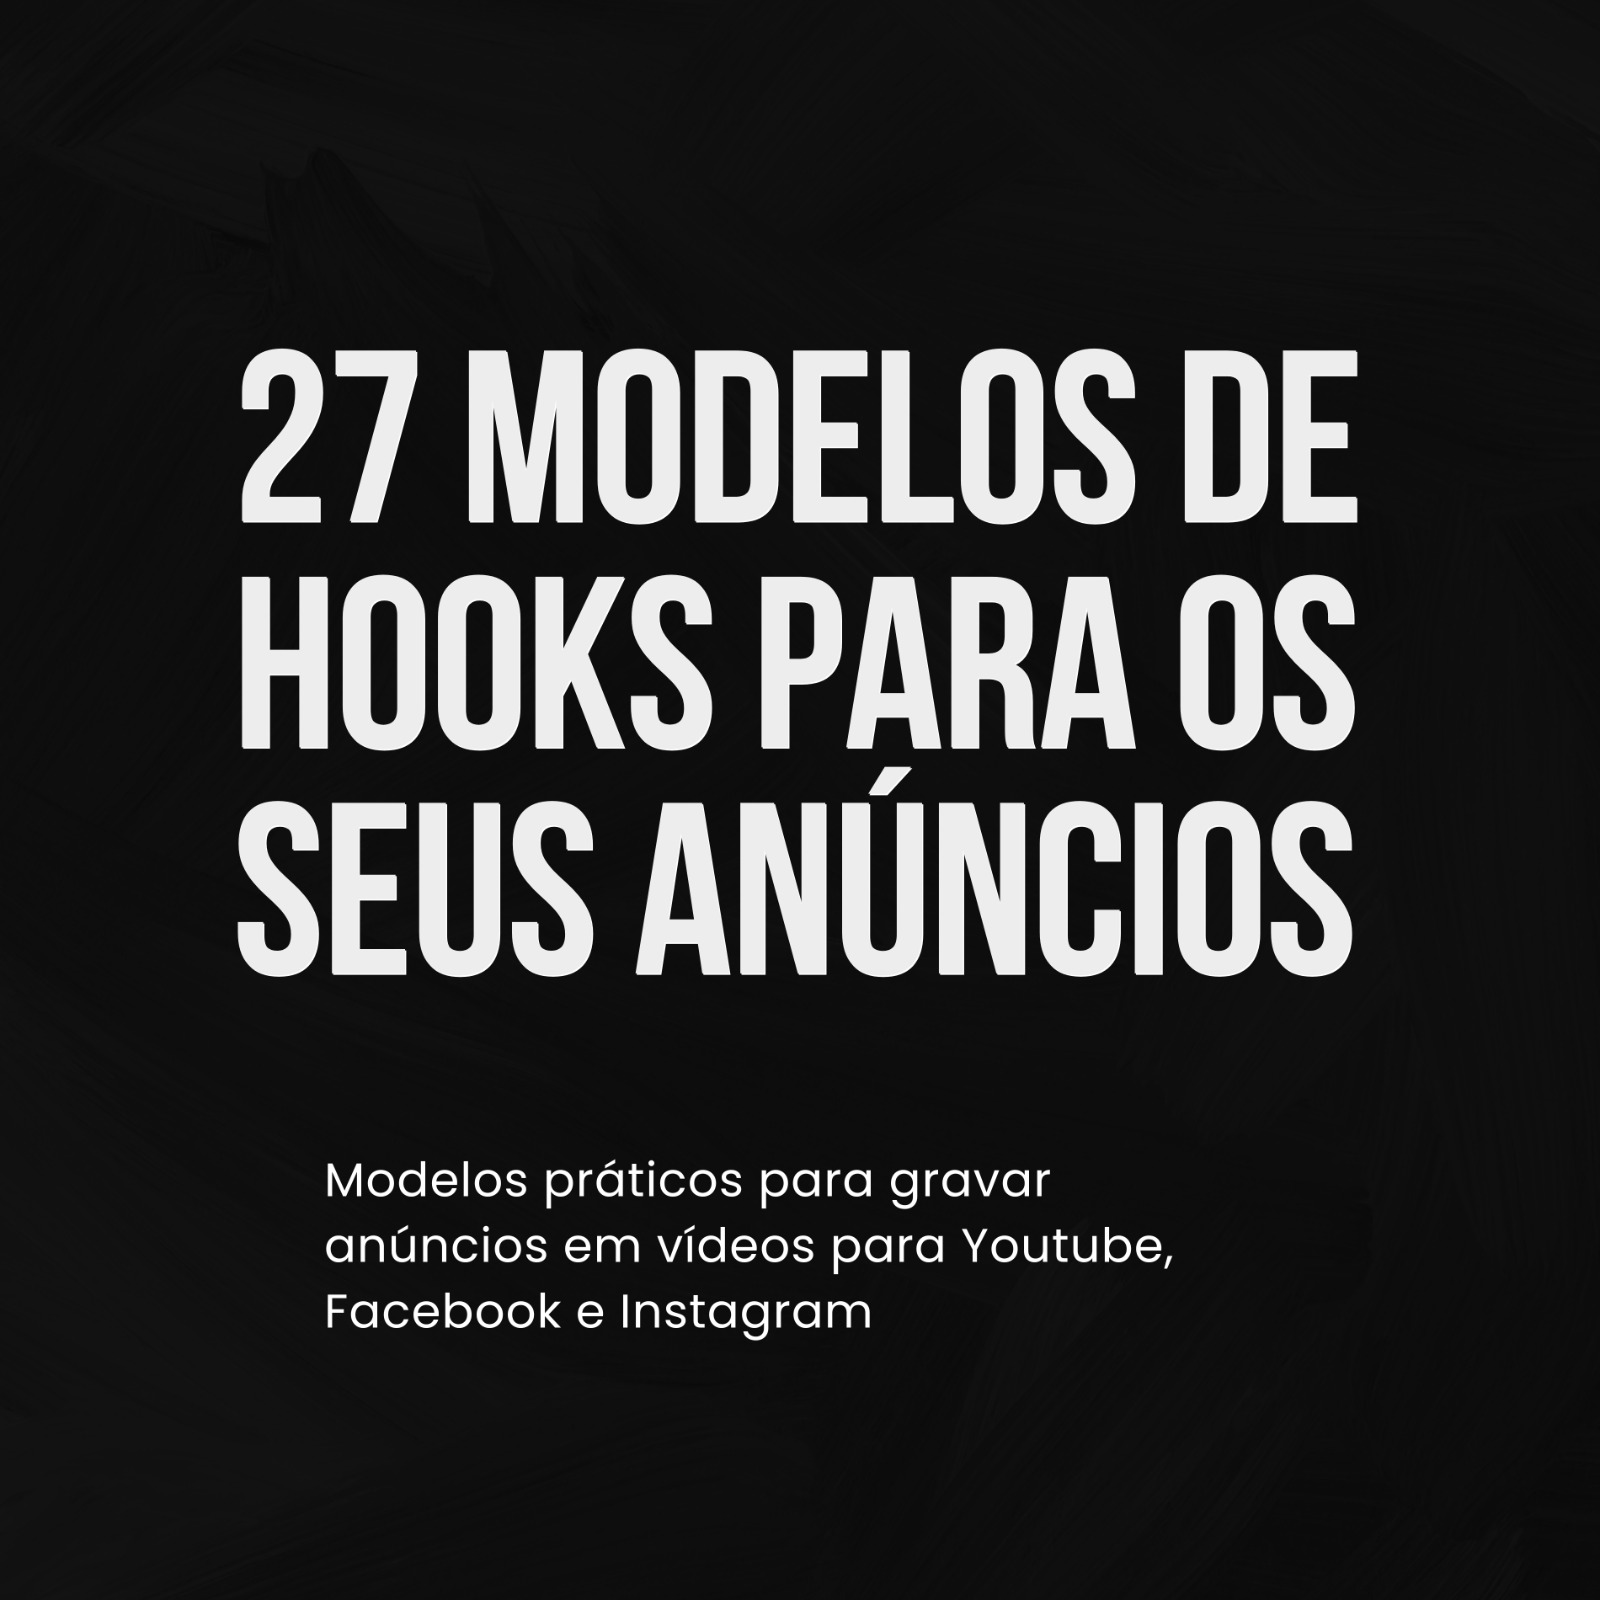 27 Modelos de Hook Para os Seus Anúncios 174